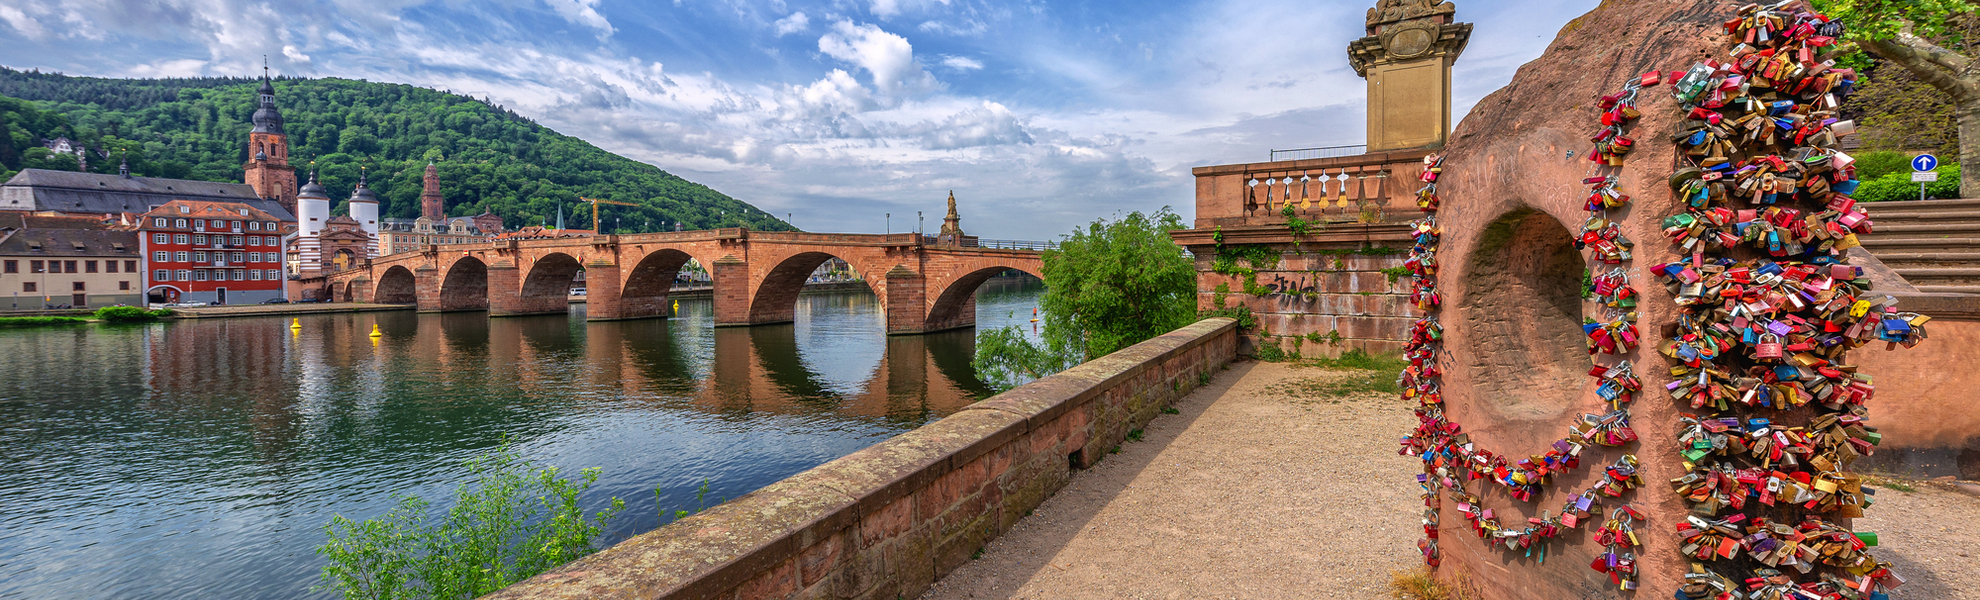 Liebesschlösser vor der Alten Brücke in Heidelberg - © Thorsten Assfalg - stock.adobe.com